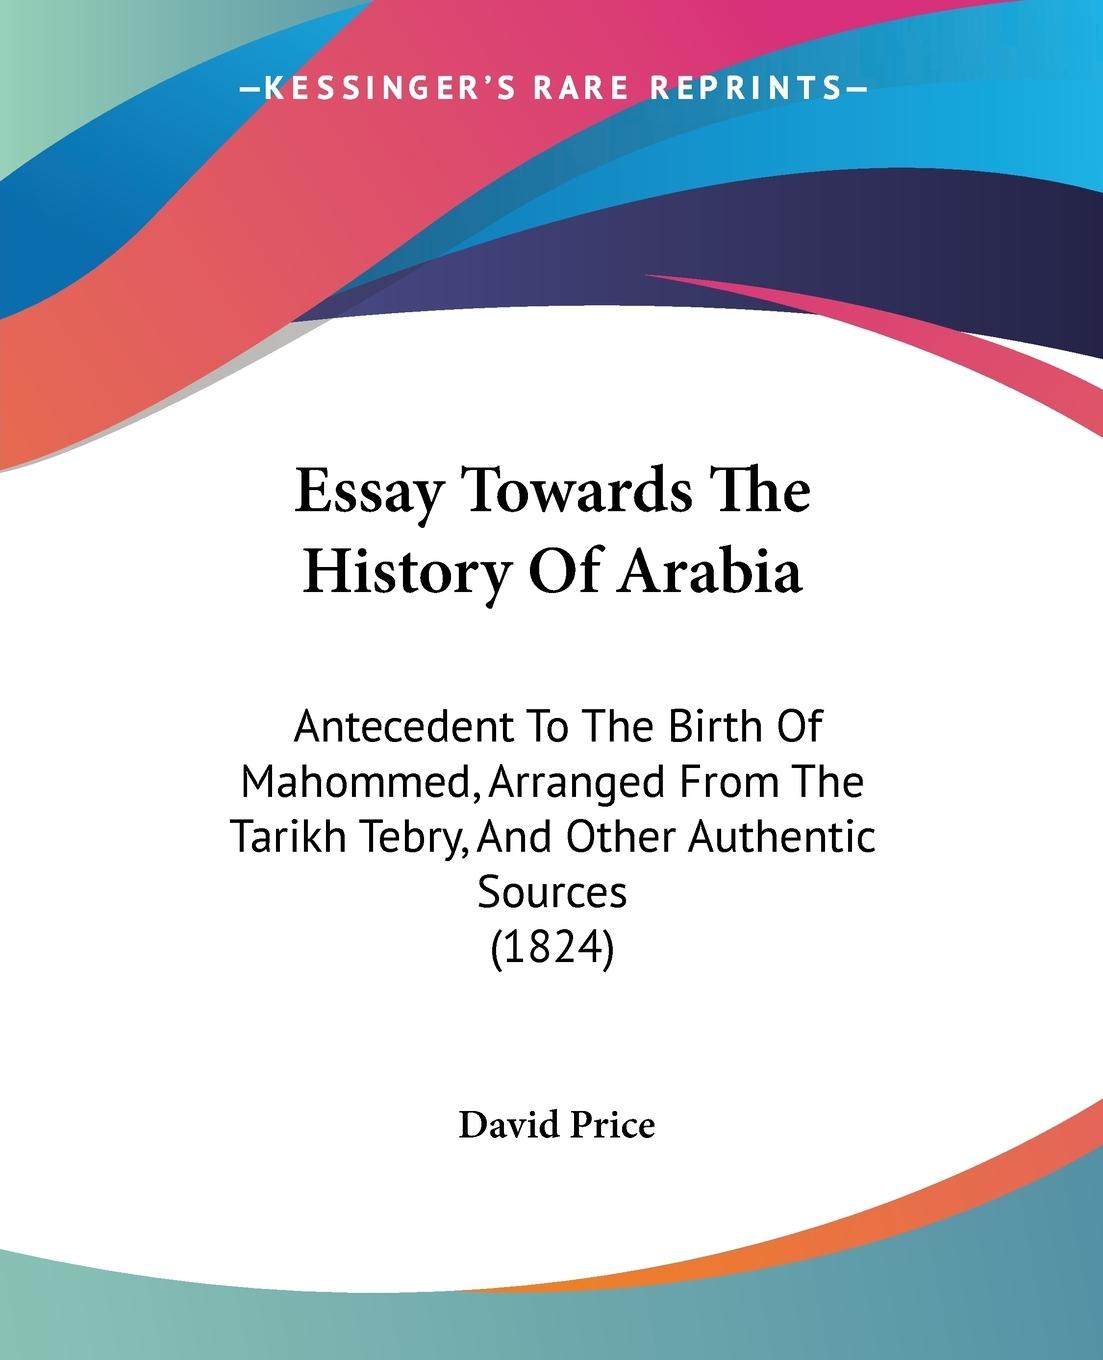 Essay Towards The History Of Arabia - Price, David